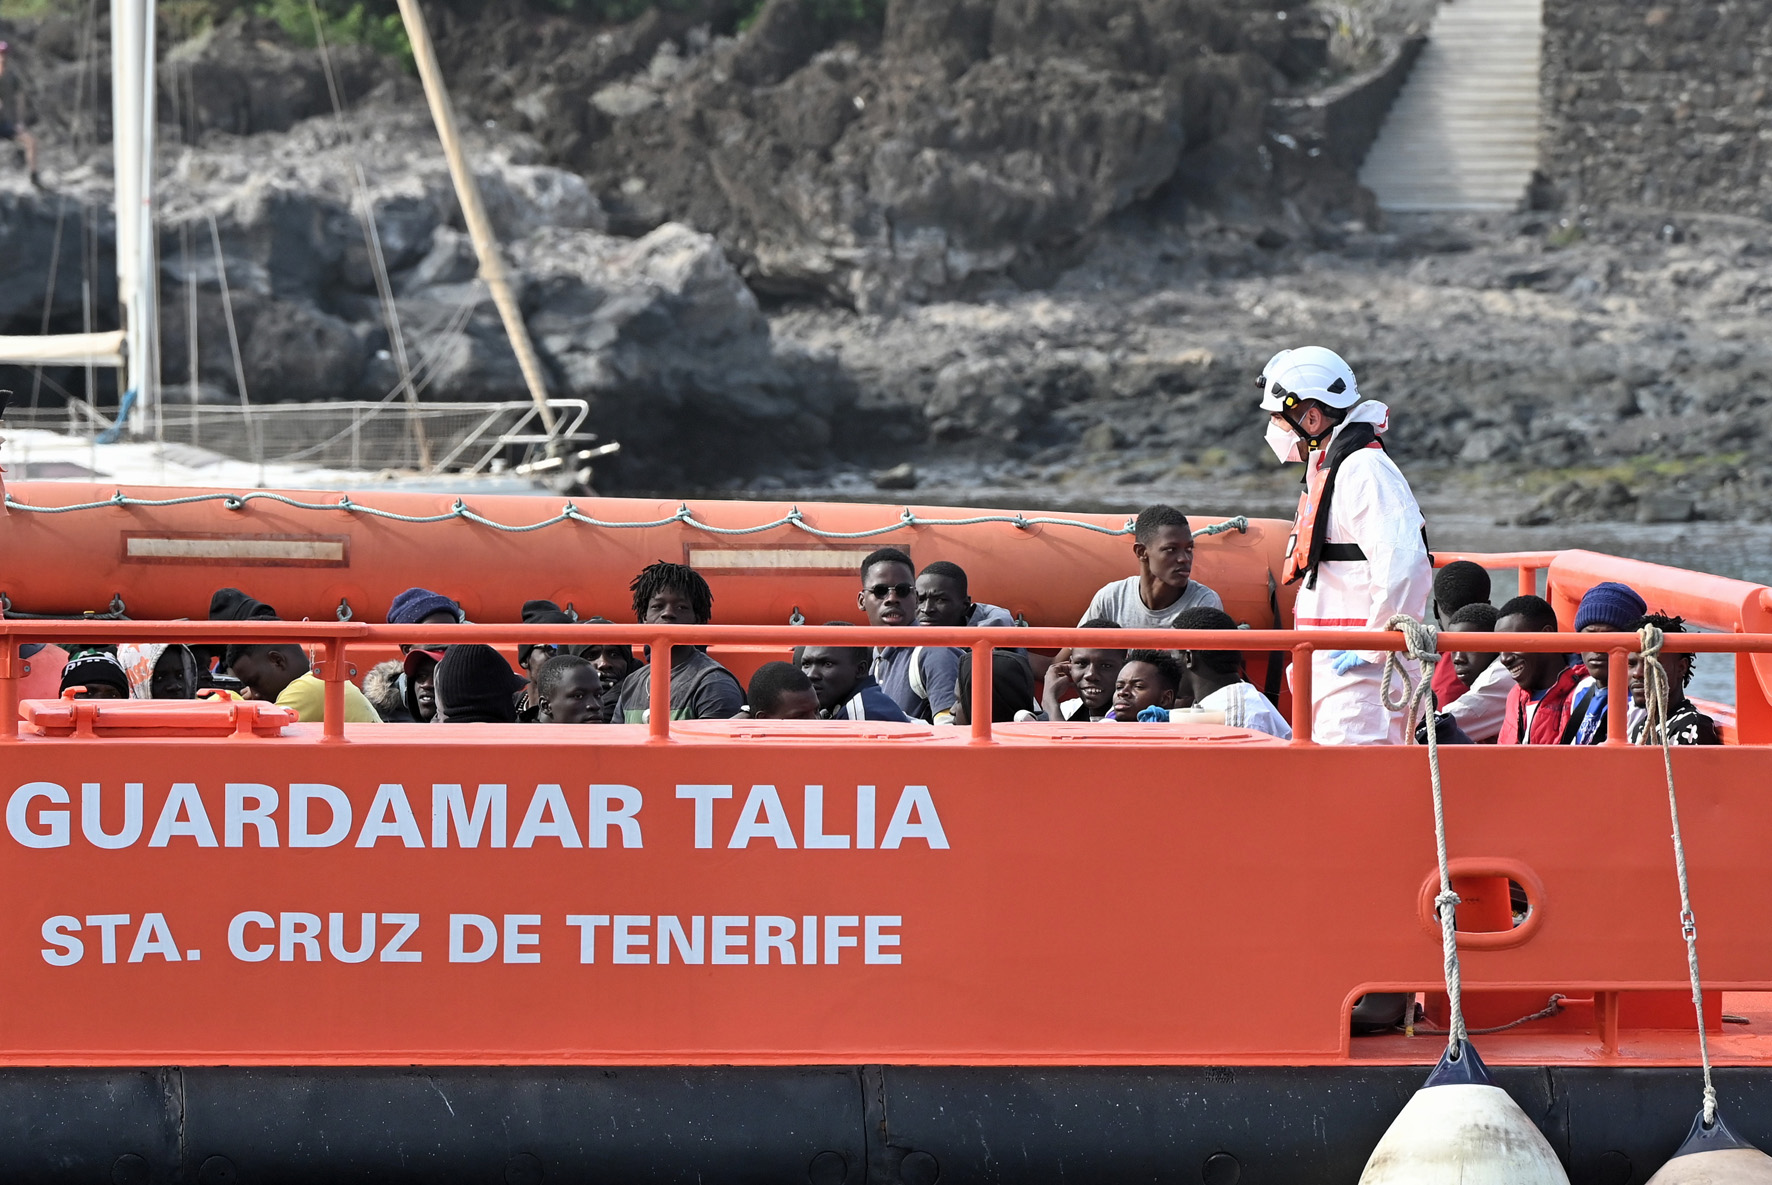 Guardamar Talía traslada al puerto de La Restinga a 38 tripulantes de una embarcación rescatada a 70 millas de El Hierro